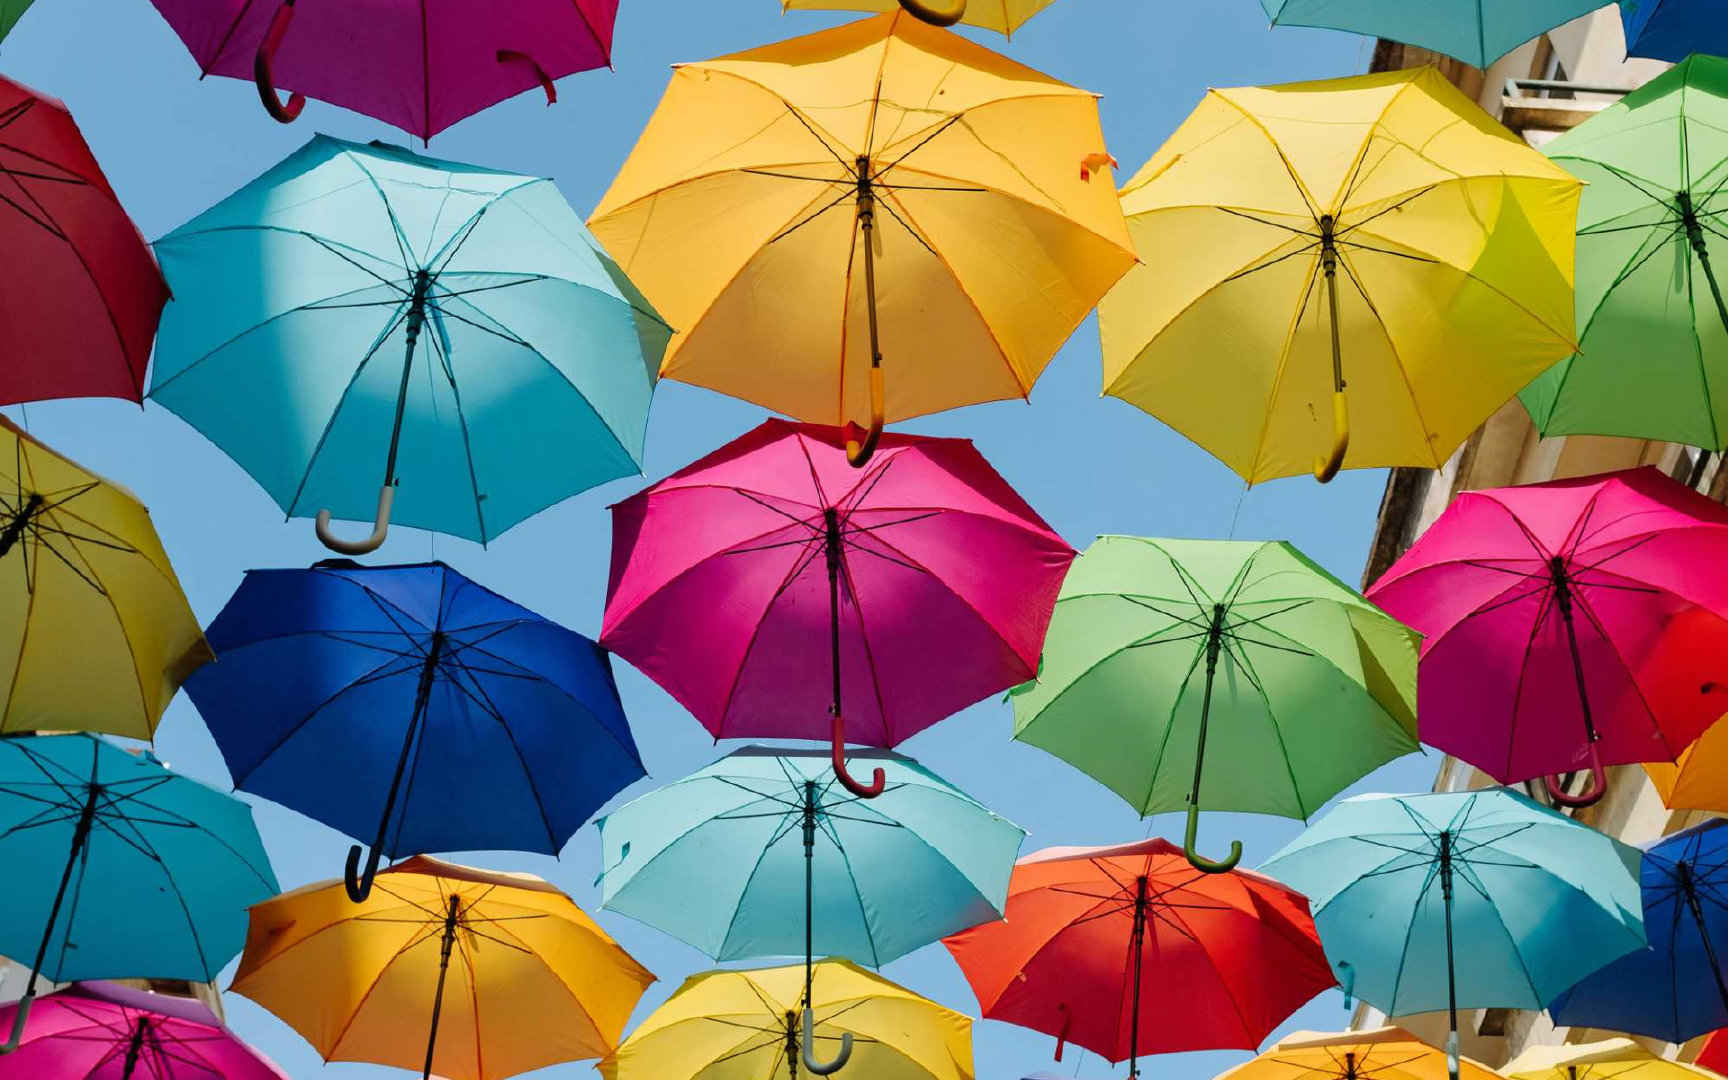 挂在街道上空的七彩雨伞的创意街景电脑壁纸 ​​​​